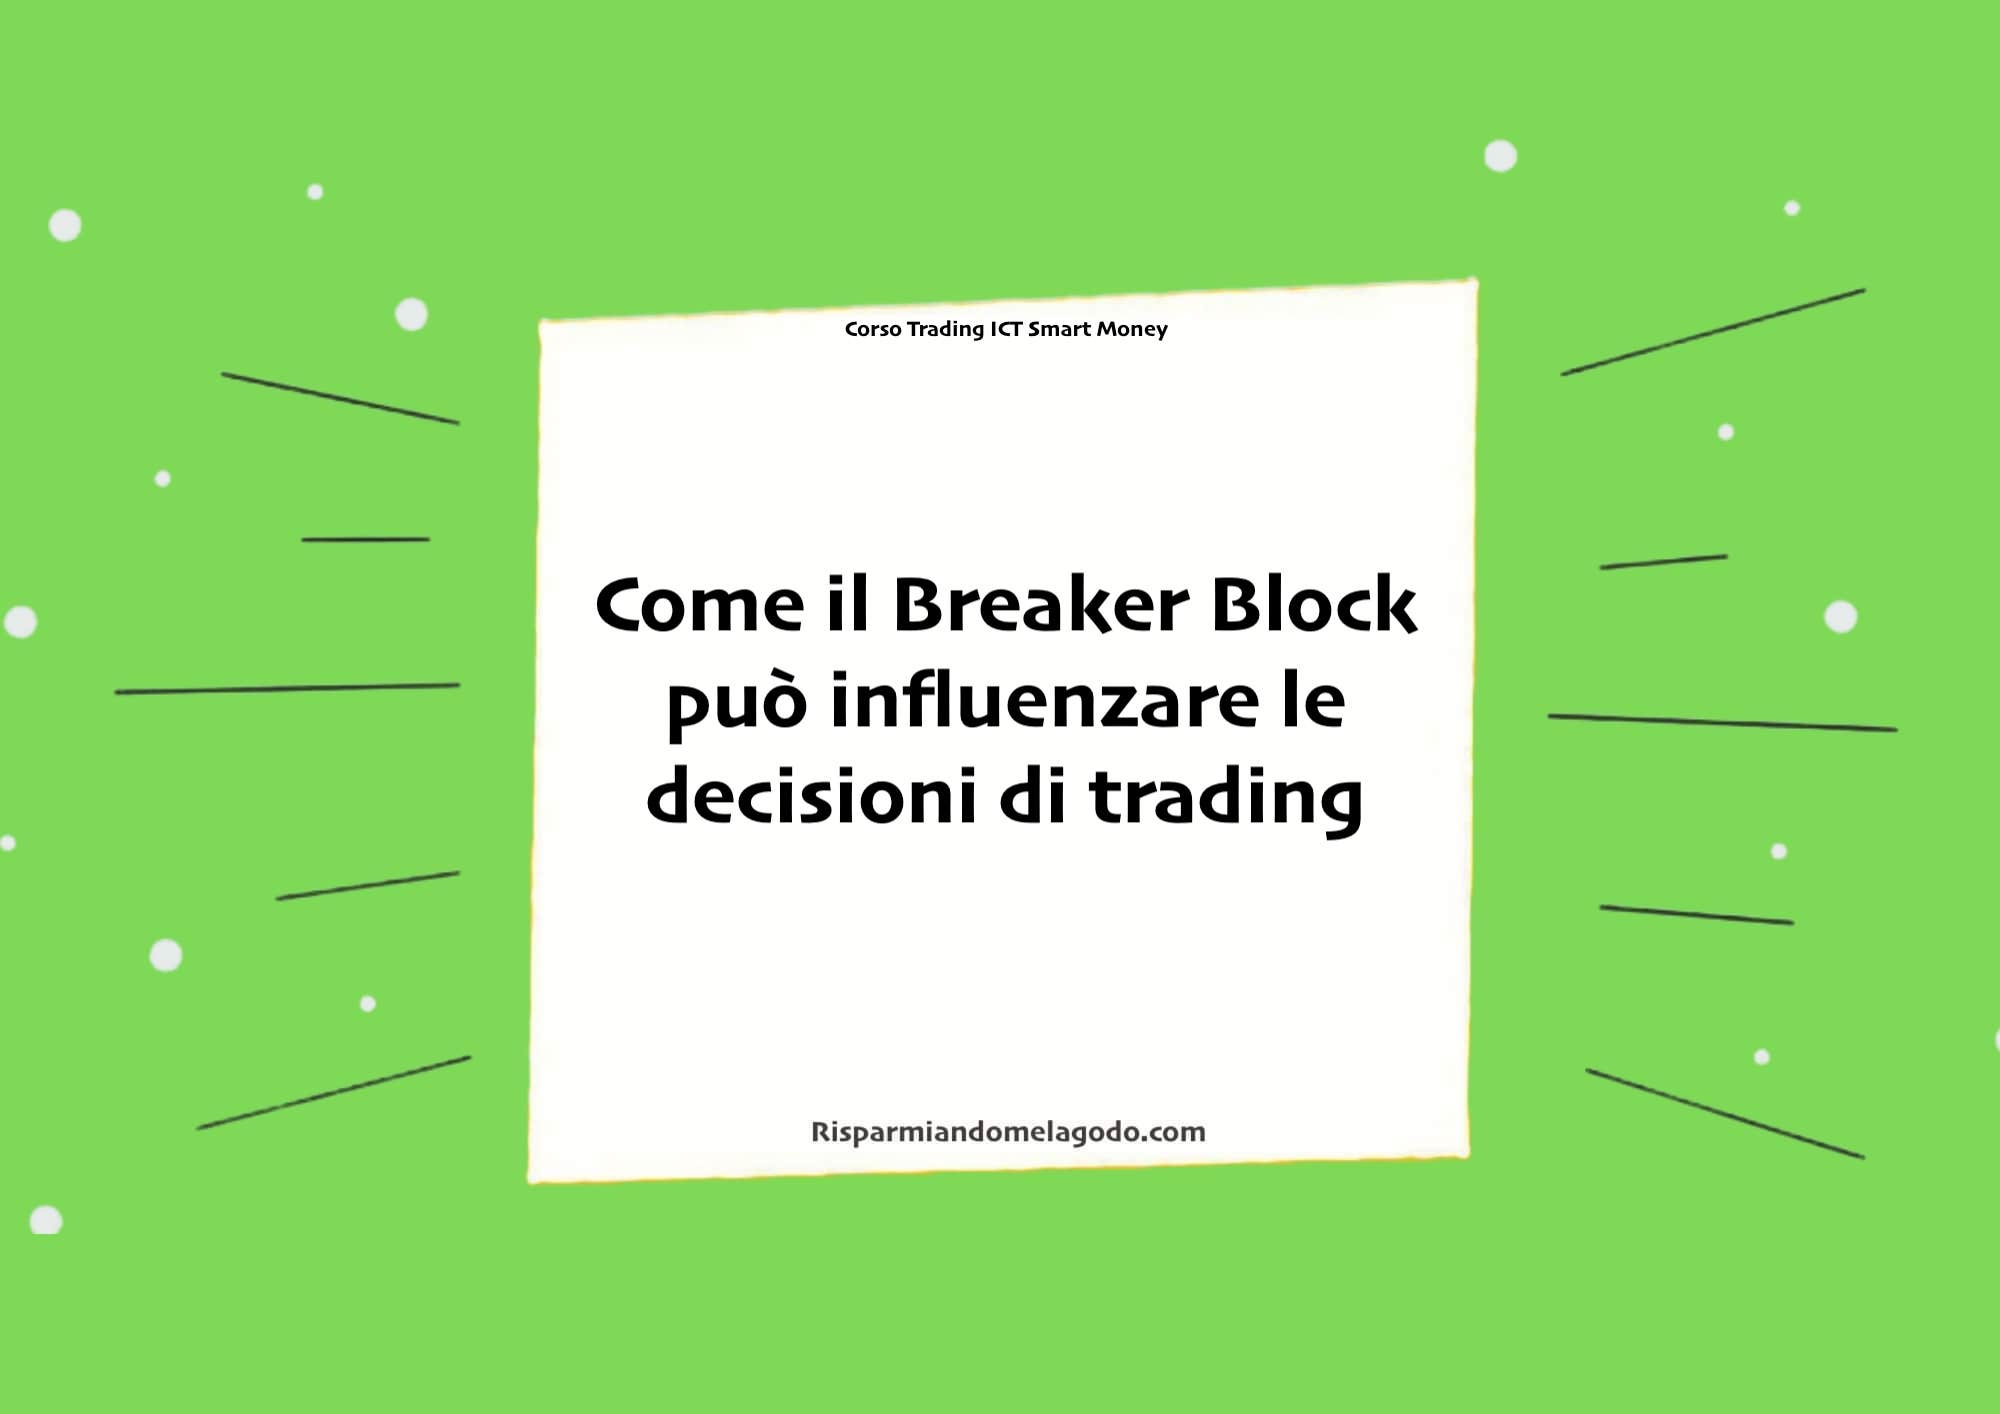 Come il Breaker Block può influenzare le decisioni di trading